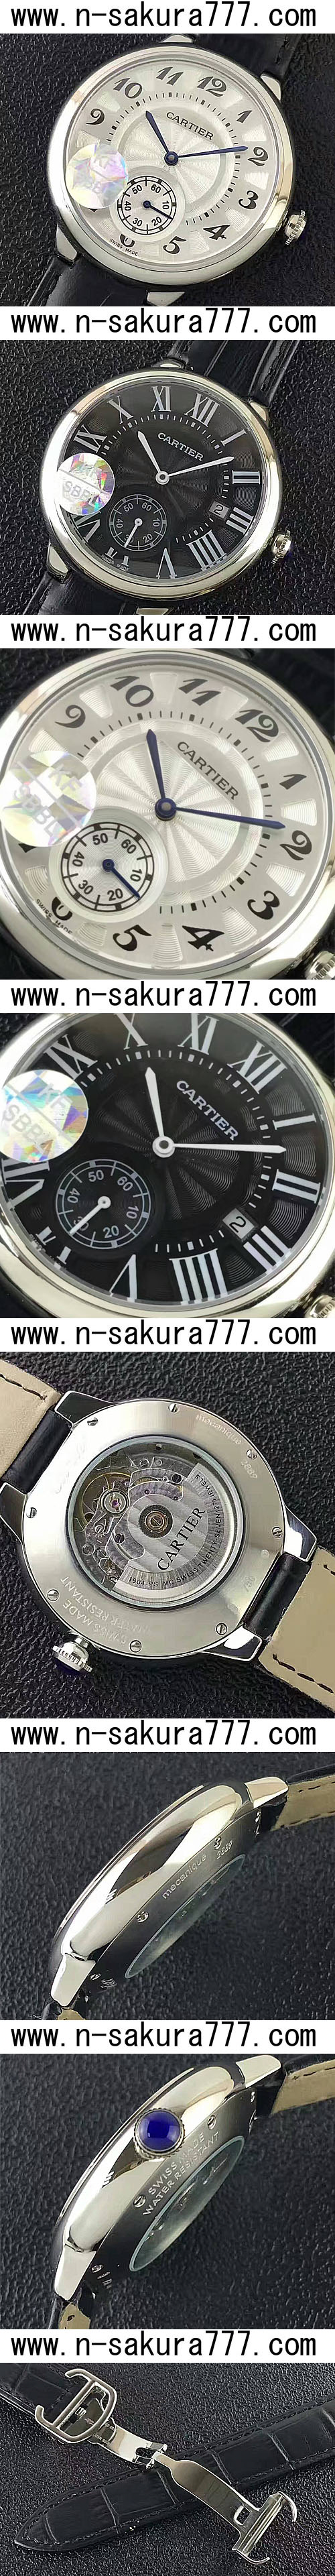 スーパーコピー時計新作カルティエ バロンブルー42mm (KF製品) - ウインドウを閉じる